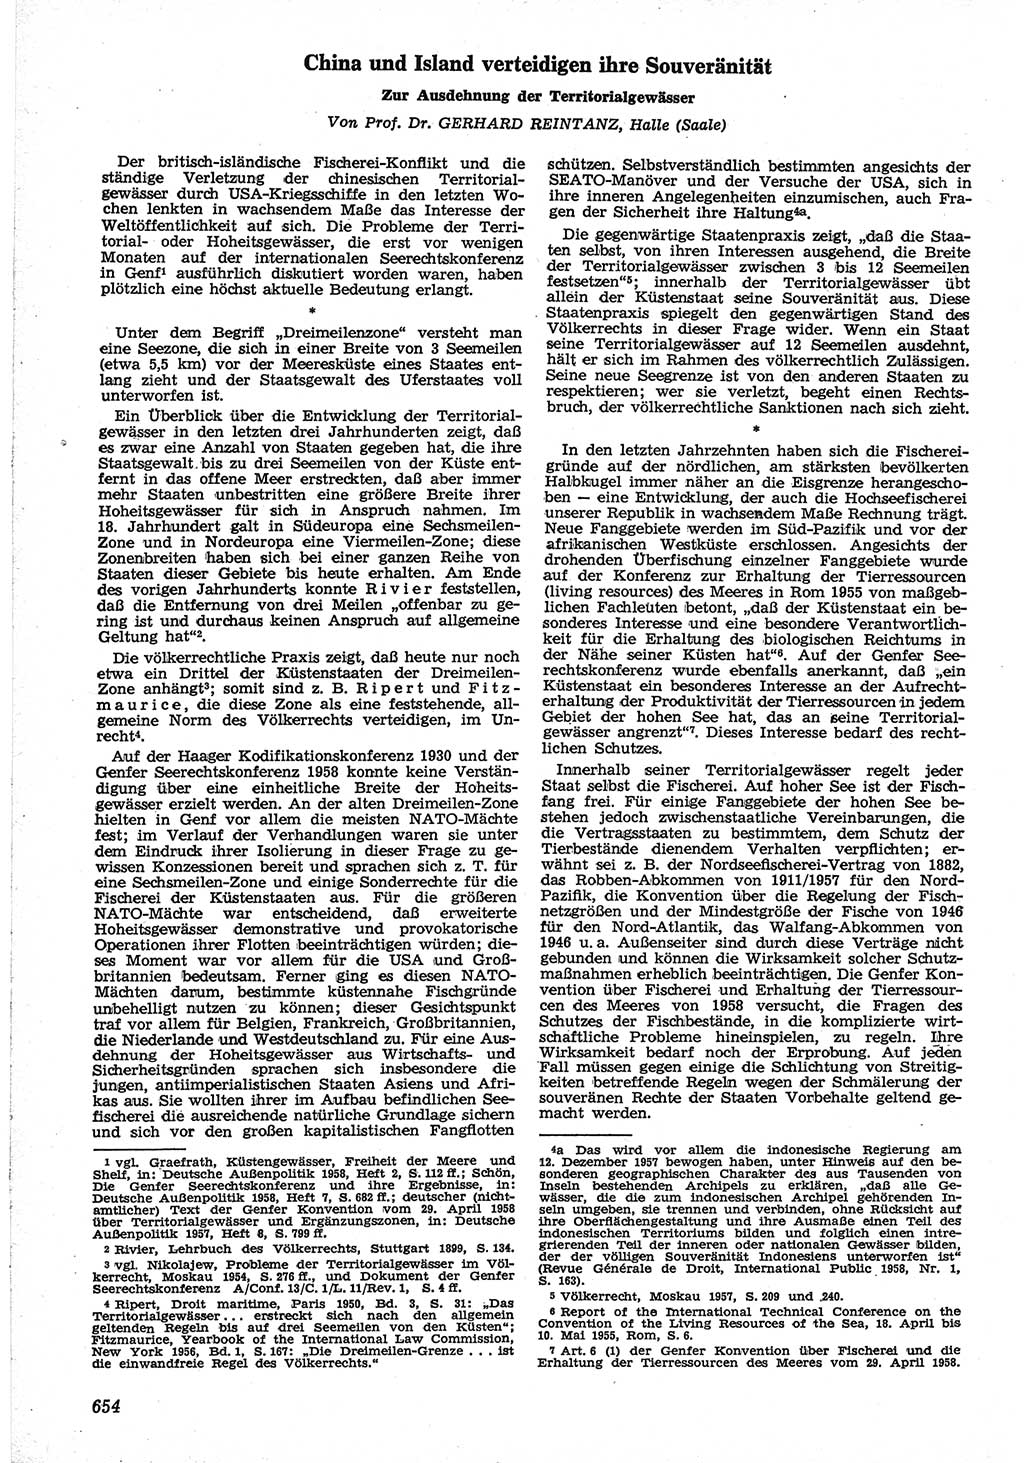 Neue Justiz (NJ), Zeitschrift für Recht und Rechtswissenschaft [Deutsche Demokratische Republik (DDR)], 12. Jahrgang 1958, Seite 654 (NJ DDR 1958, S. 654)